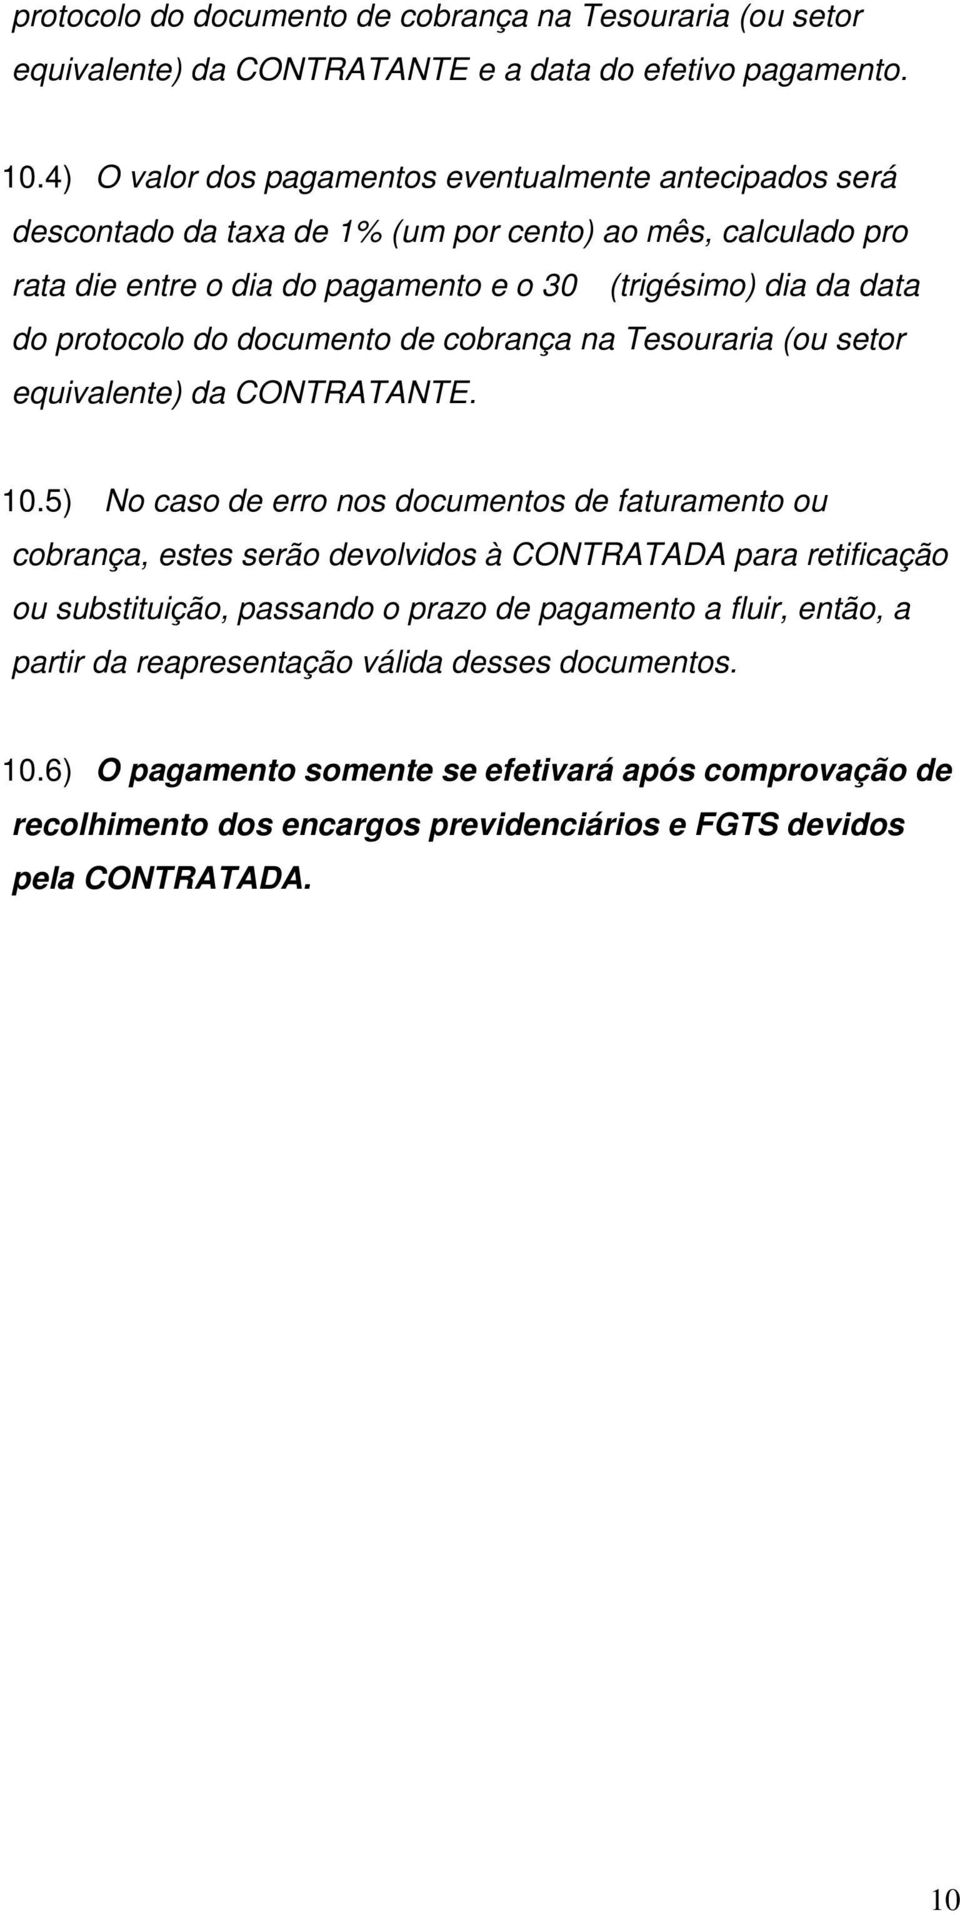 protocolo do documento de cobrança na Tesouraria (ou setor equivalente) da CONTRATANTE. 10.